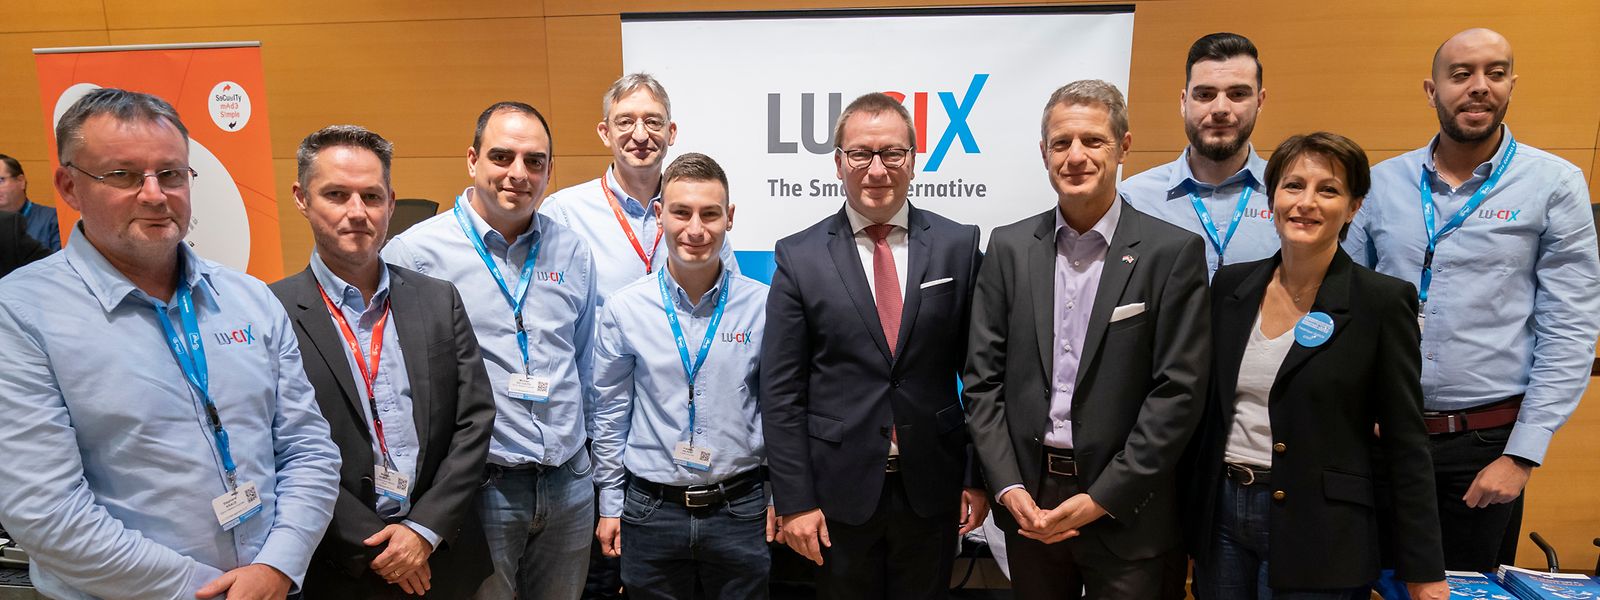 Le ministère de la Digitalisation s’est associé à LU-CIX ASBL et à la Chambre de commerce pour lancer ensuite une version tout public de Luxchat.